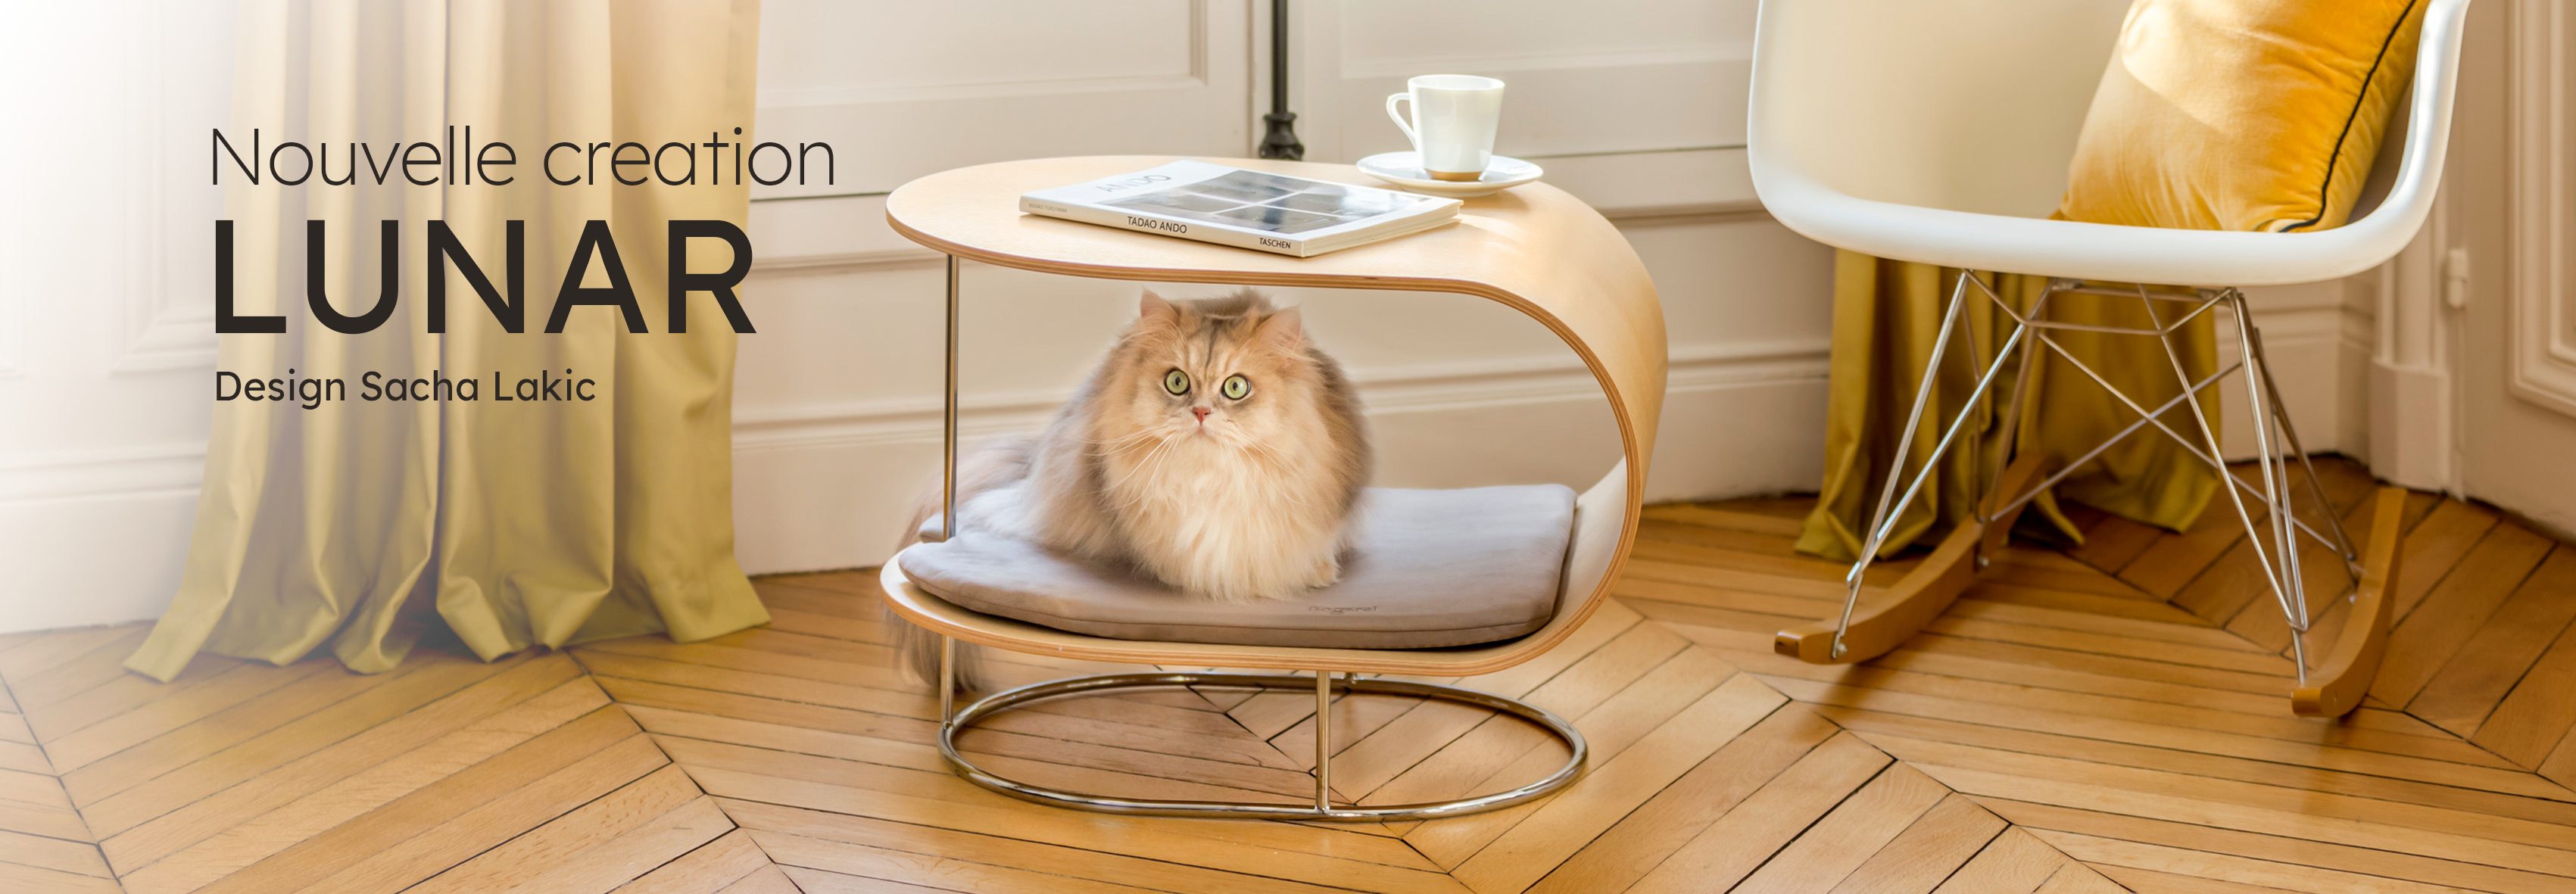 Bogarel, mobilier contemporain pour chats